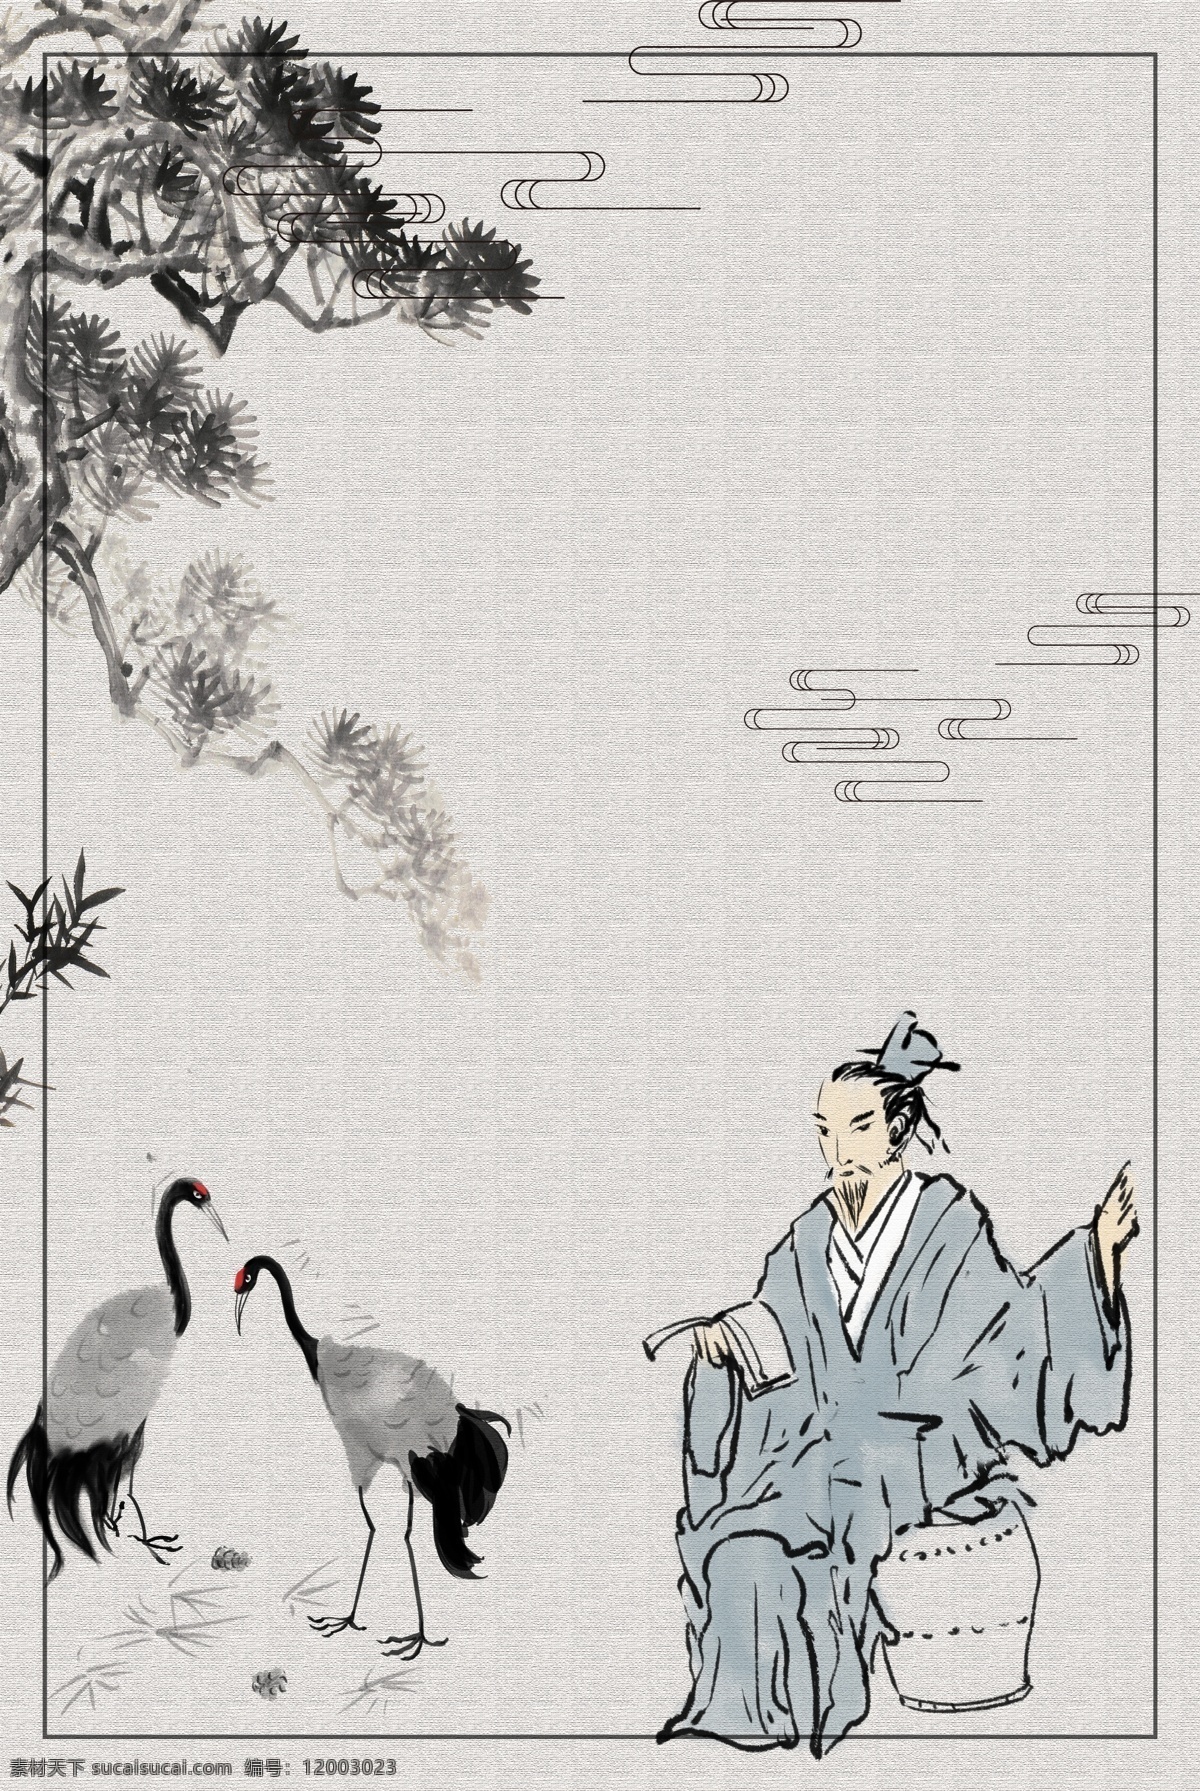 中国 风 水墨 禅意 海报 背景 简约 艺术 禅 意境 字体设计 创意海报 线条 墙面挂画 文化